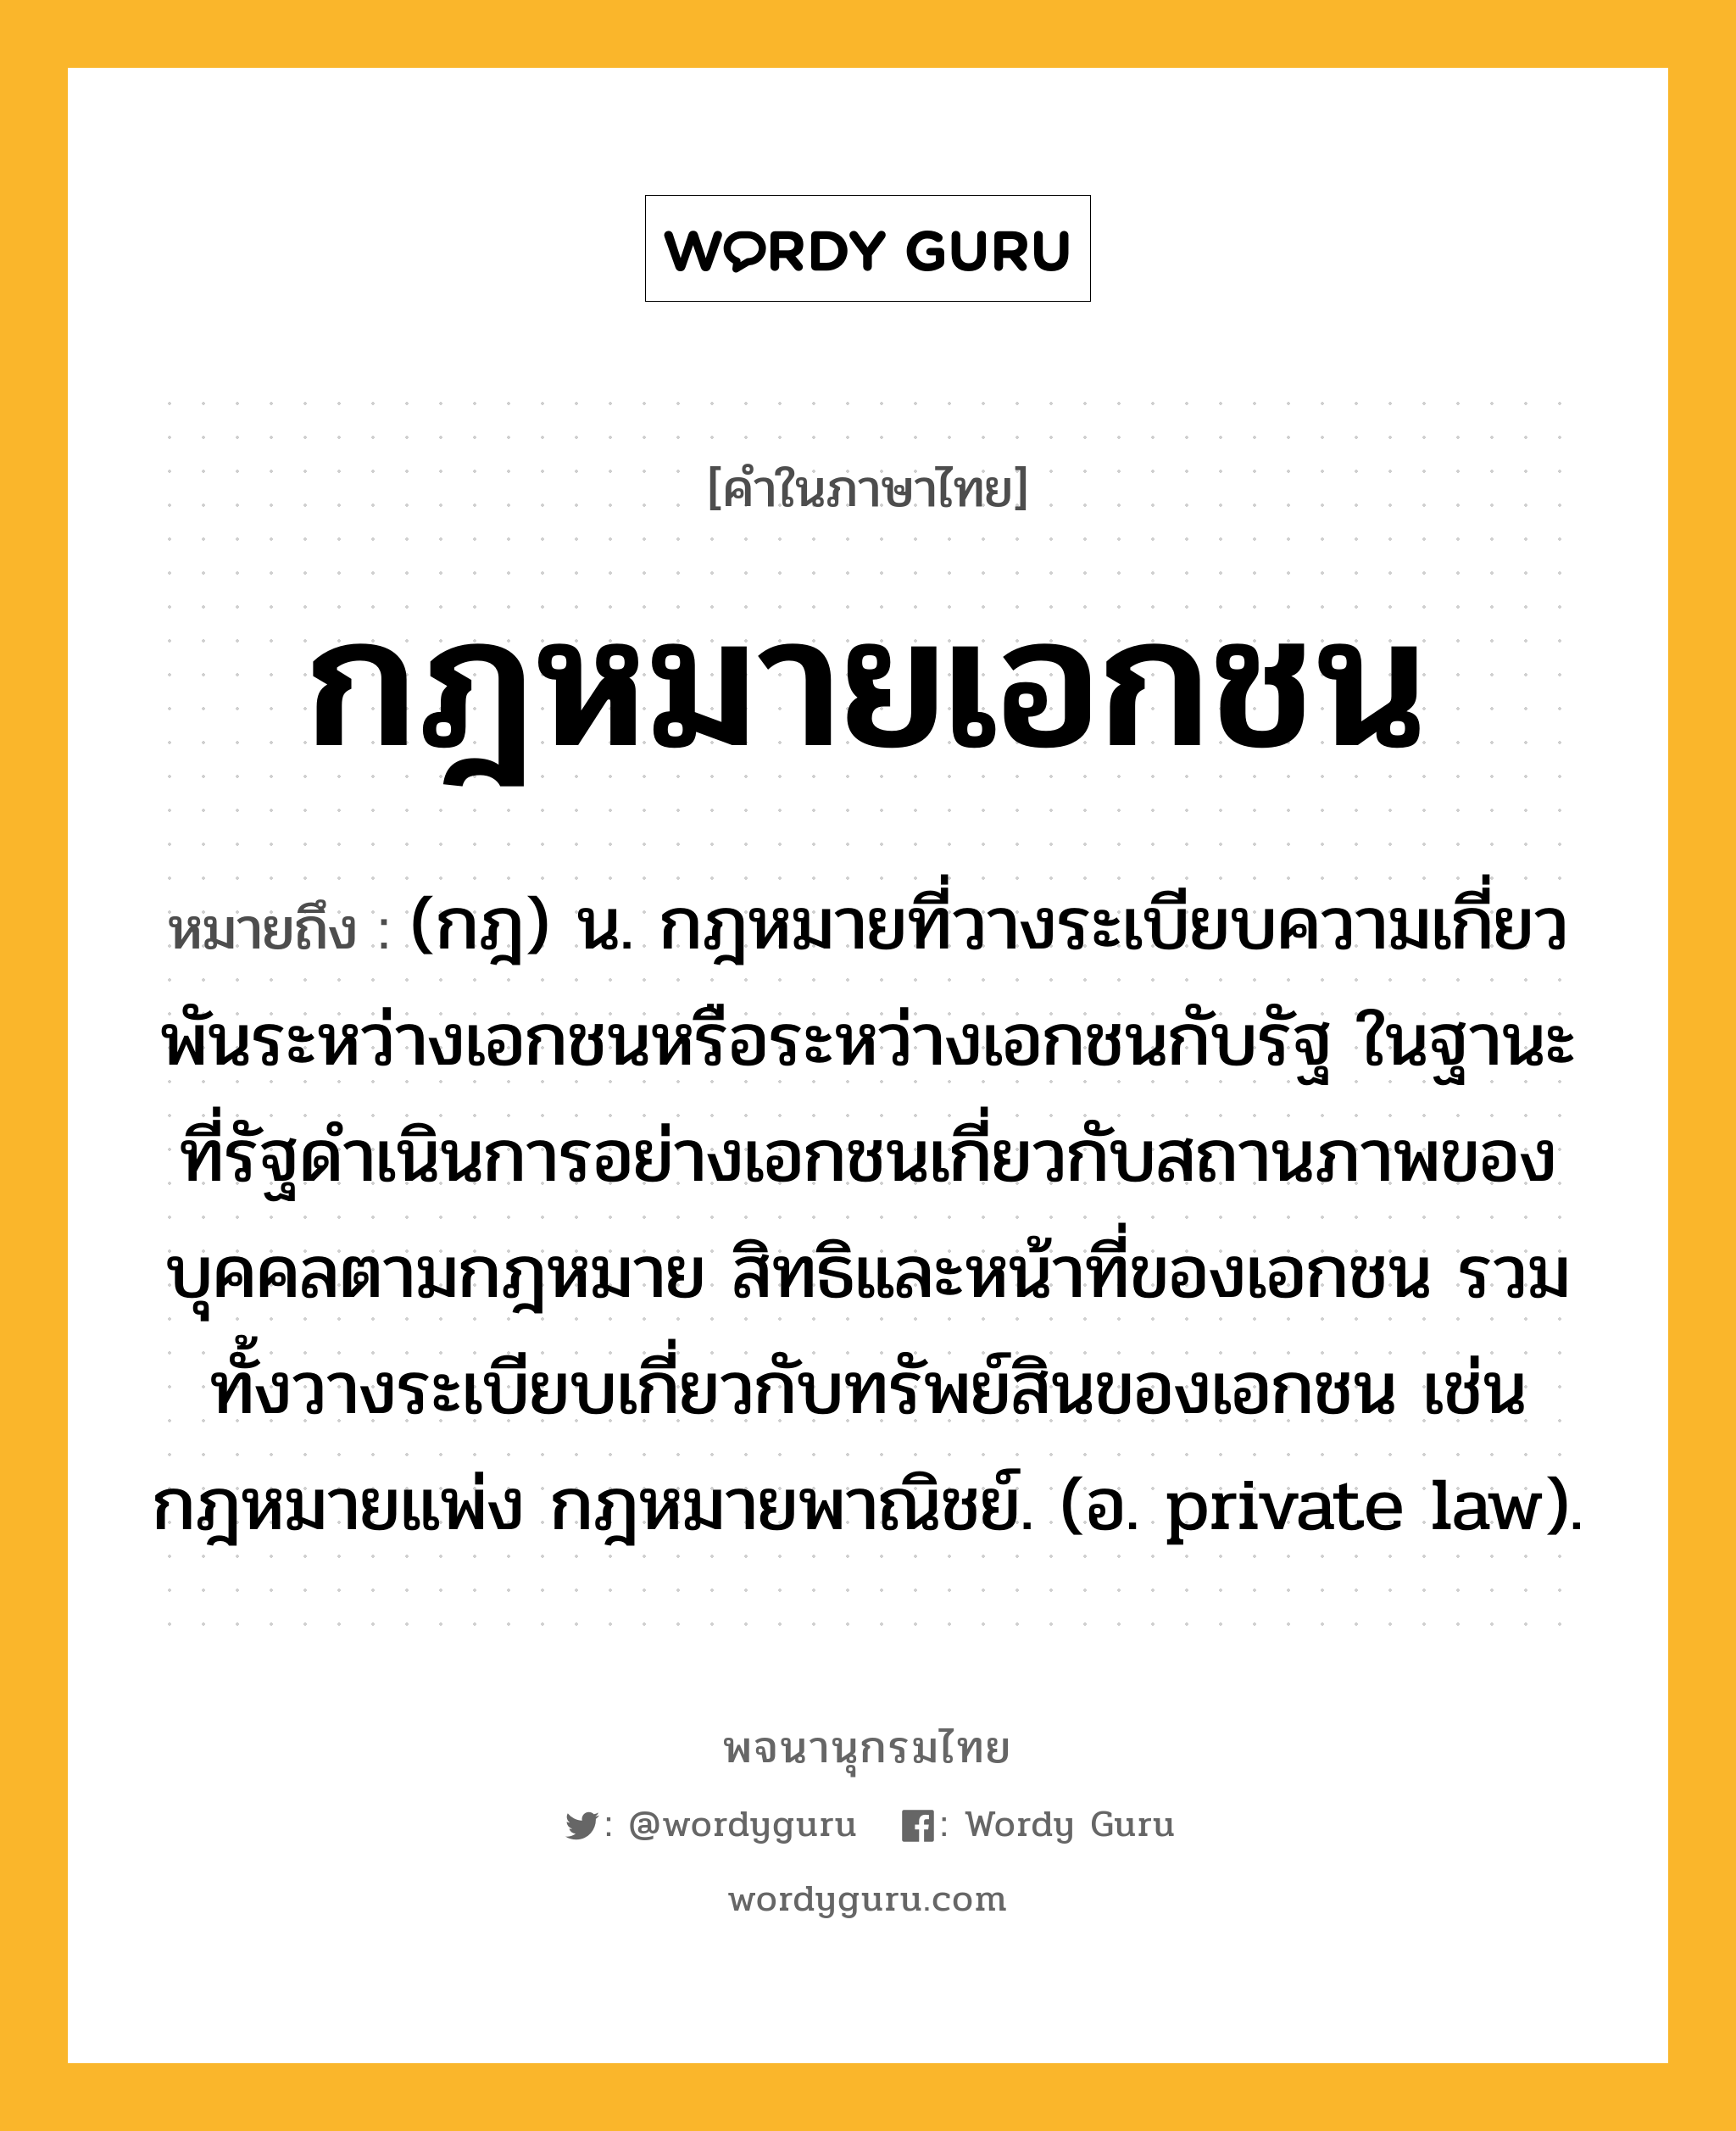 กฎหมายเอกชน ความหมาย หมายถึงอะไร?, คำในภาษาไทย กฎหมายเอกชน หมายถึง (กฎ) น. กฎหมายที่วางระเบียบความเกี่ยวพันระหว่างเอกชนหรือระหว่างเอกชนกับรัฐ ในฐานะที่รัฐดำเนินการอย่างเอกชนเกี่ยวกับสถานภาพของบุคคลตามกฎหมาย สิทธิและหน้าที่ของเอกชน รวมทั้งวางระเบียบเกี่ยวกับทรัพย์สินของเอกชน เช่น กฎหมายแพ่ง กฎหมายพาณิชย์. (อ. private law).